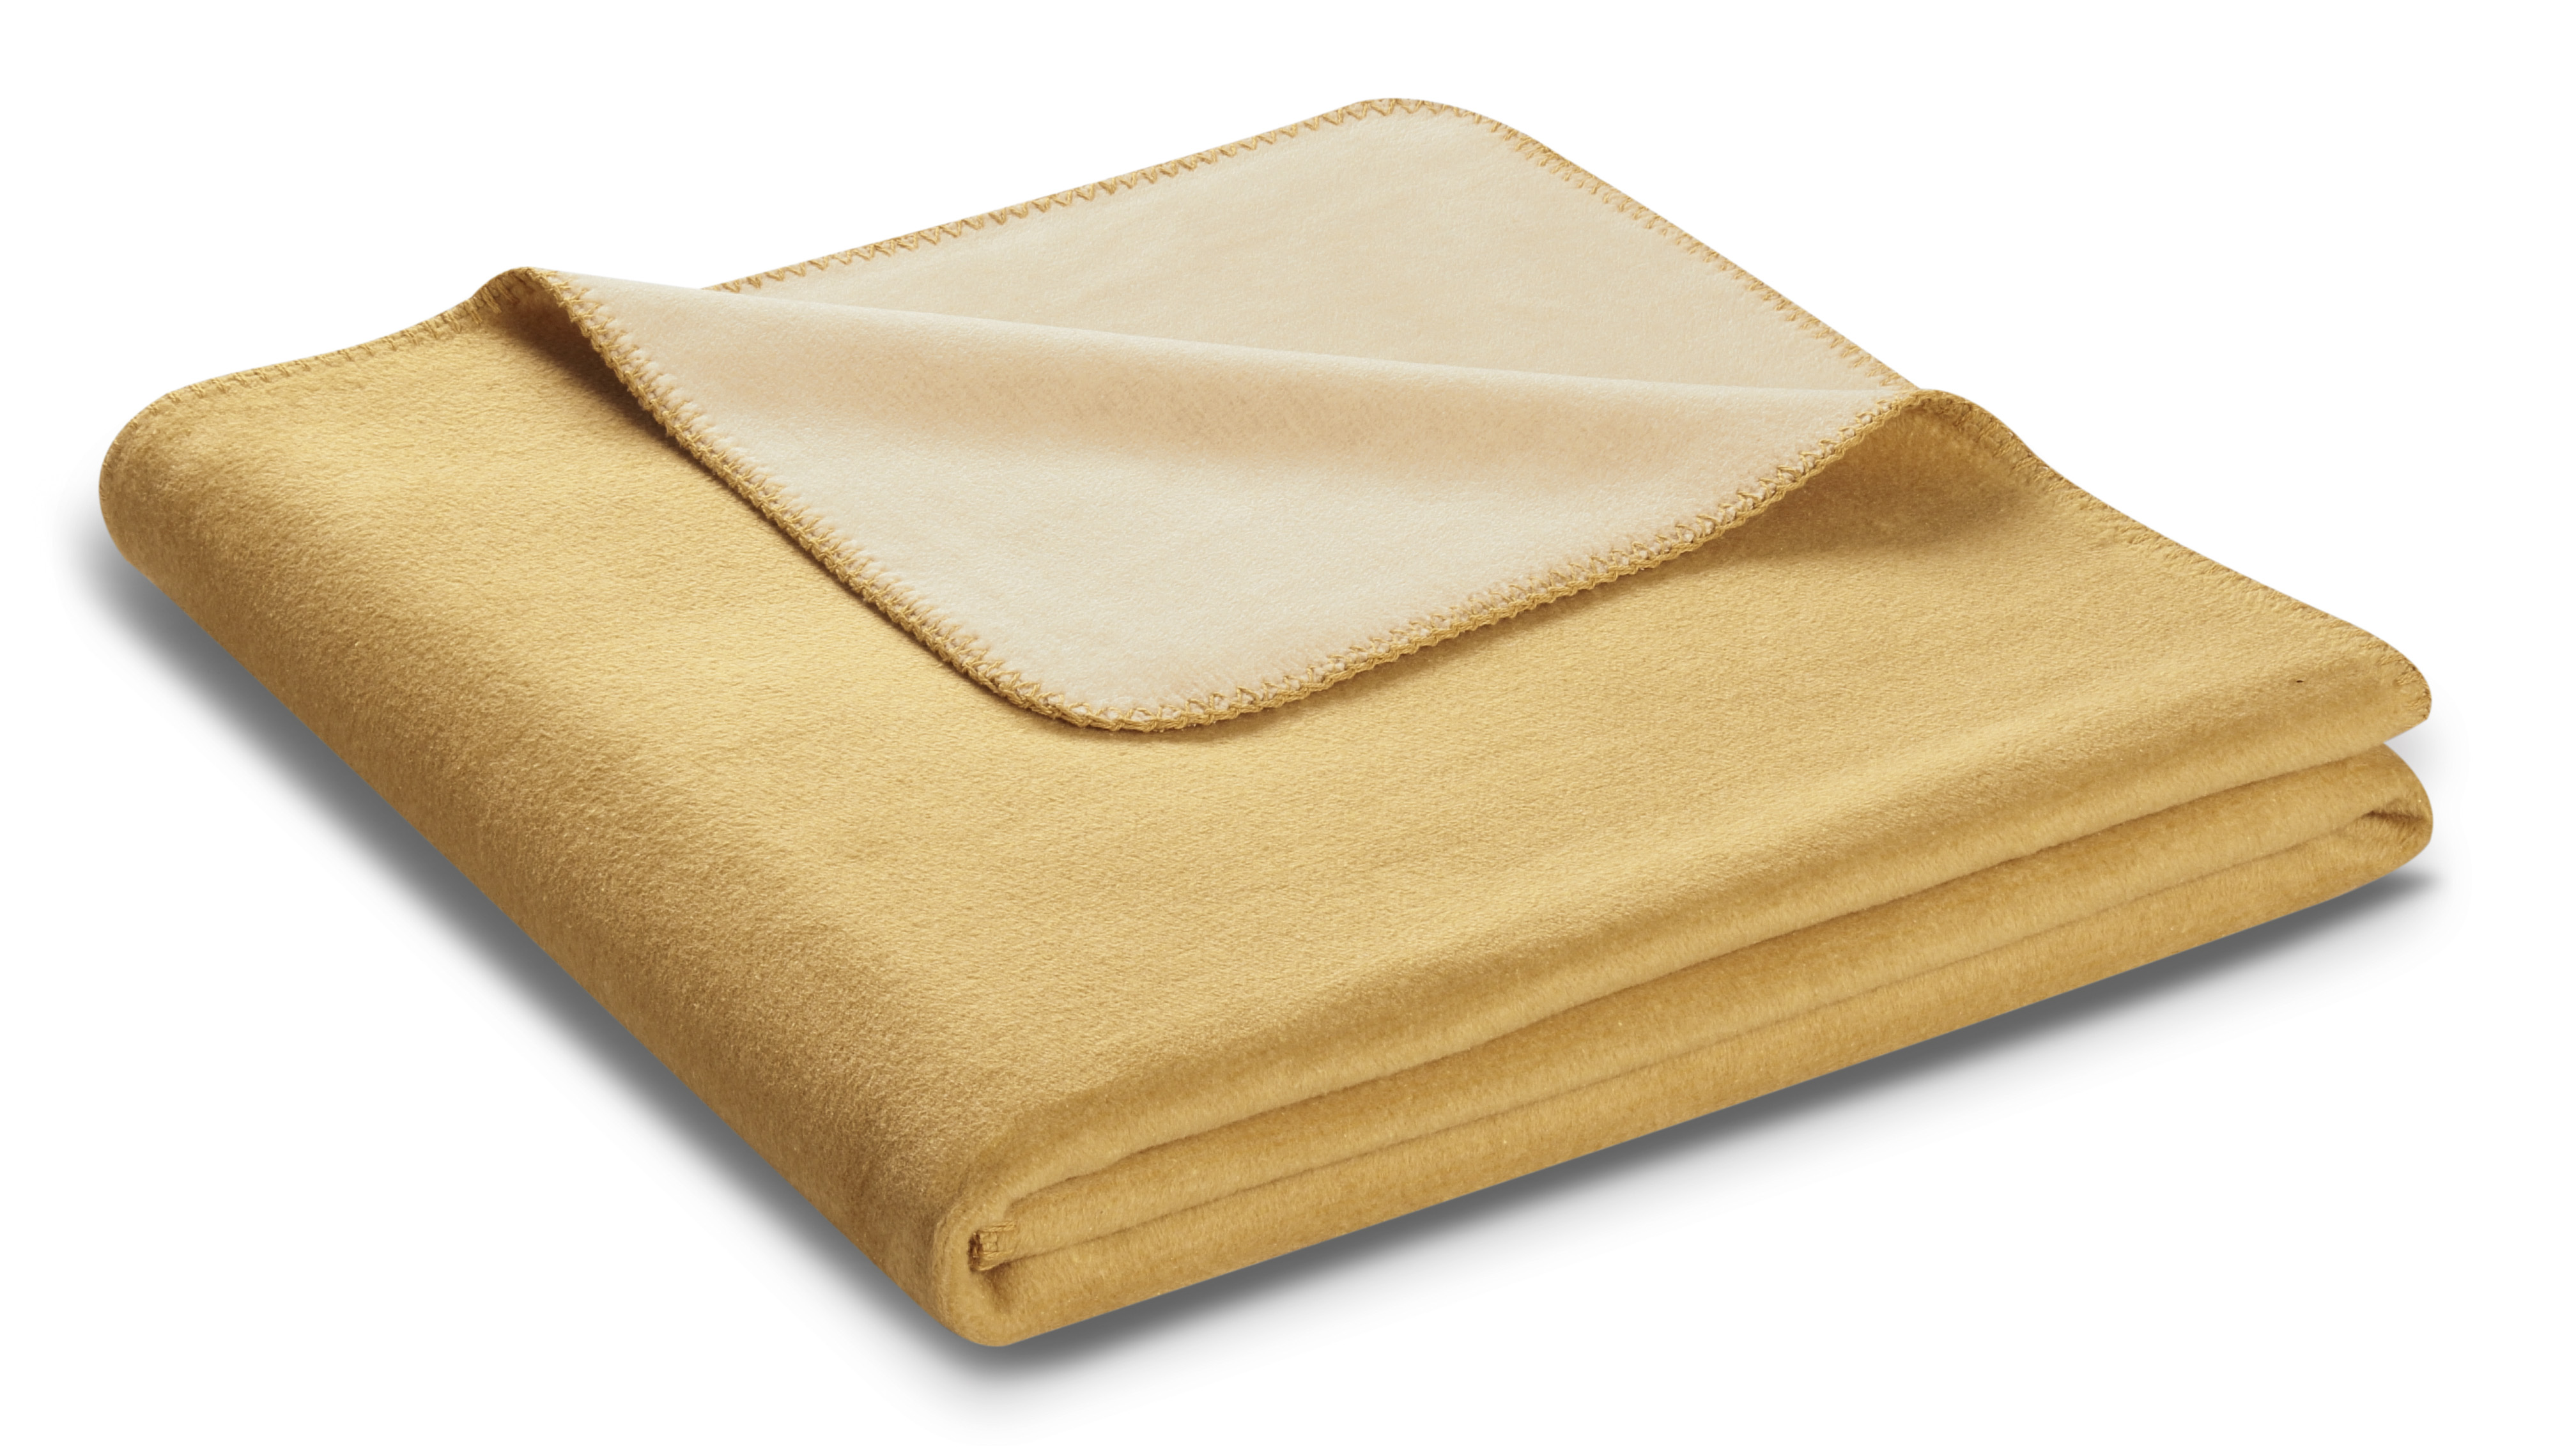 Wohndecke "Melange Doubleface" aus Baumwollmischgewebe in 150x200 cm in Honig-Creme - Päckchen